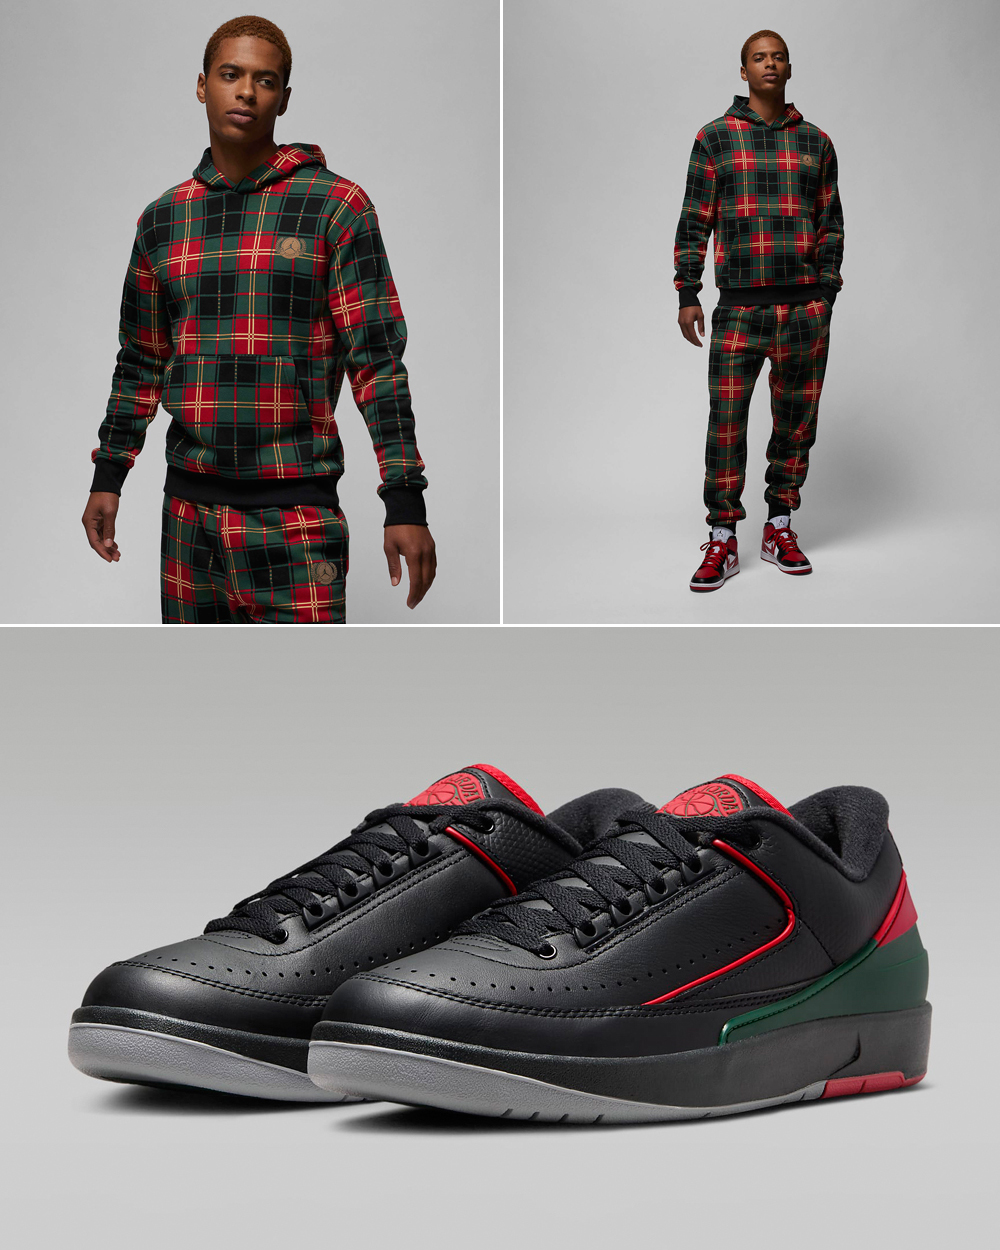 Air-Jordan-2-Low-Christmas-Outfit-1